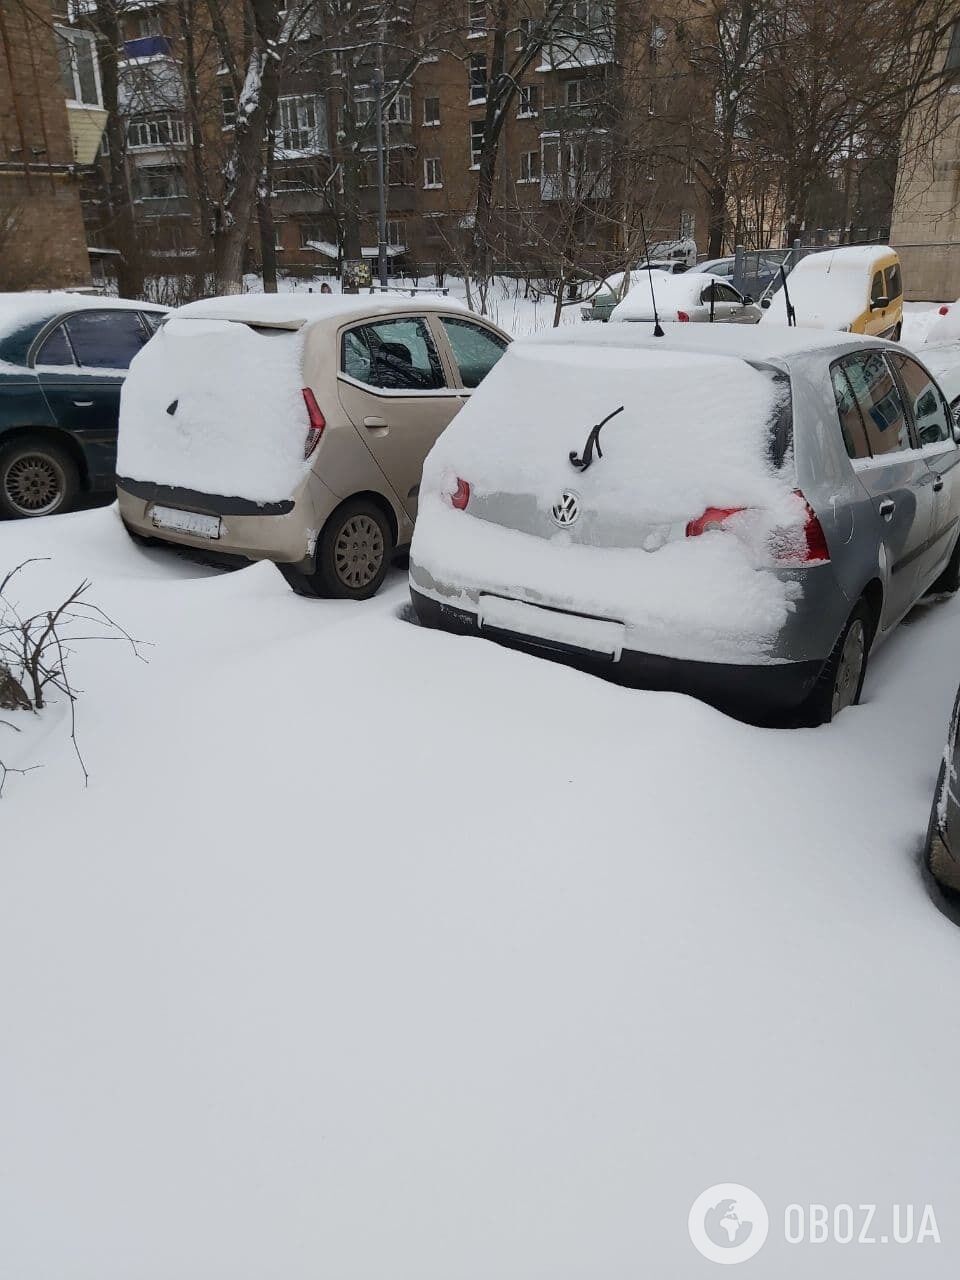 Комунальникам заважають прибирати сніг припарковані автомобілі.